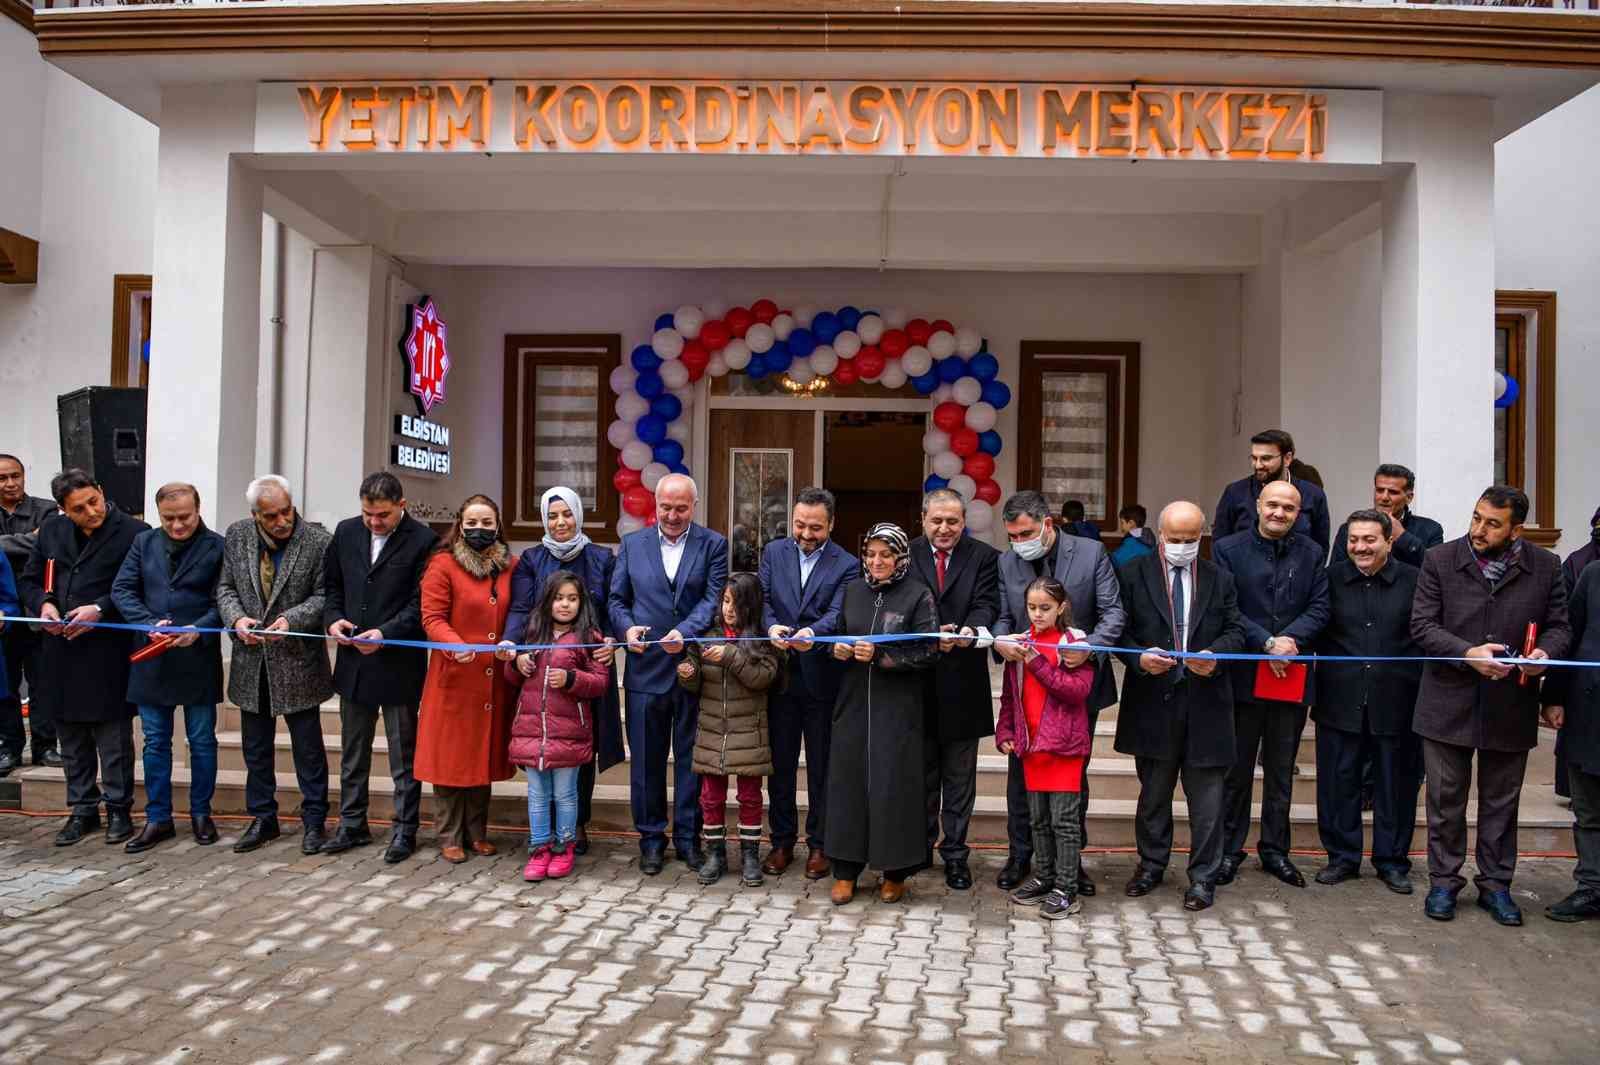 Türkiye’nin en büyük ikinci Yetim Koordinasyon Merkezi Elbistan’da açıldı #kahramanmaras